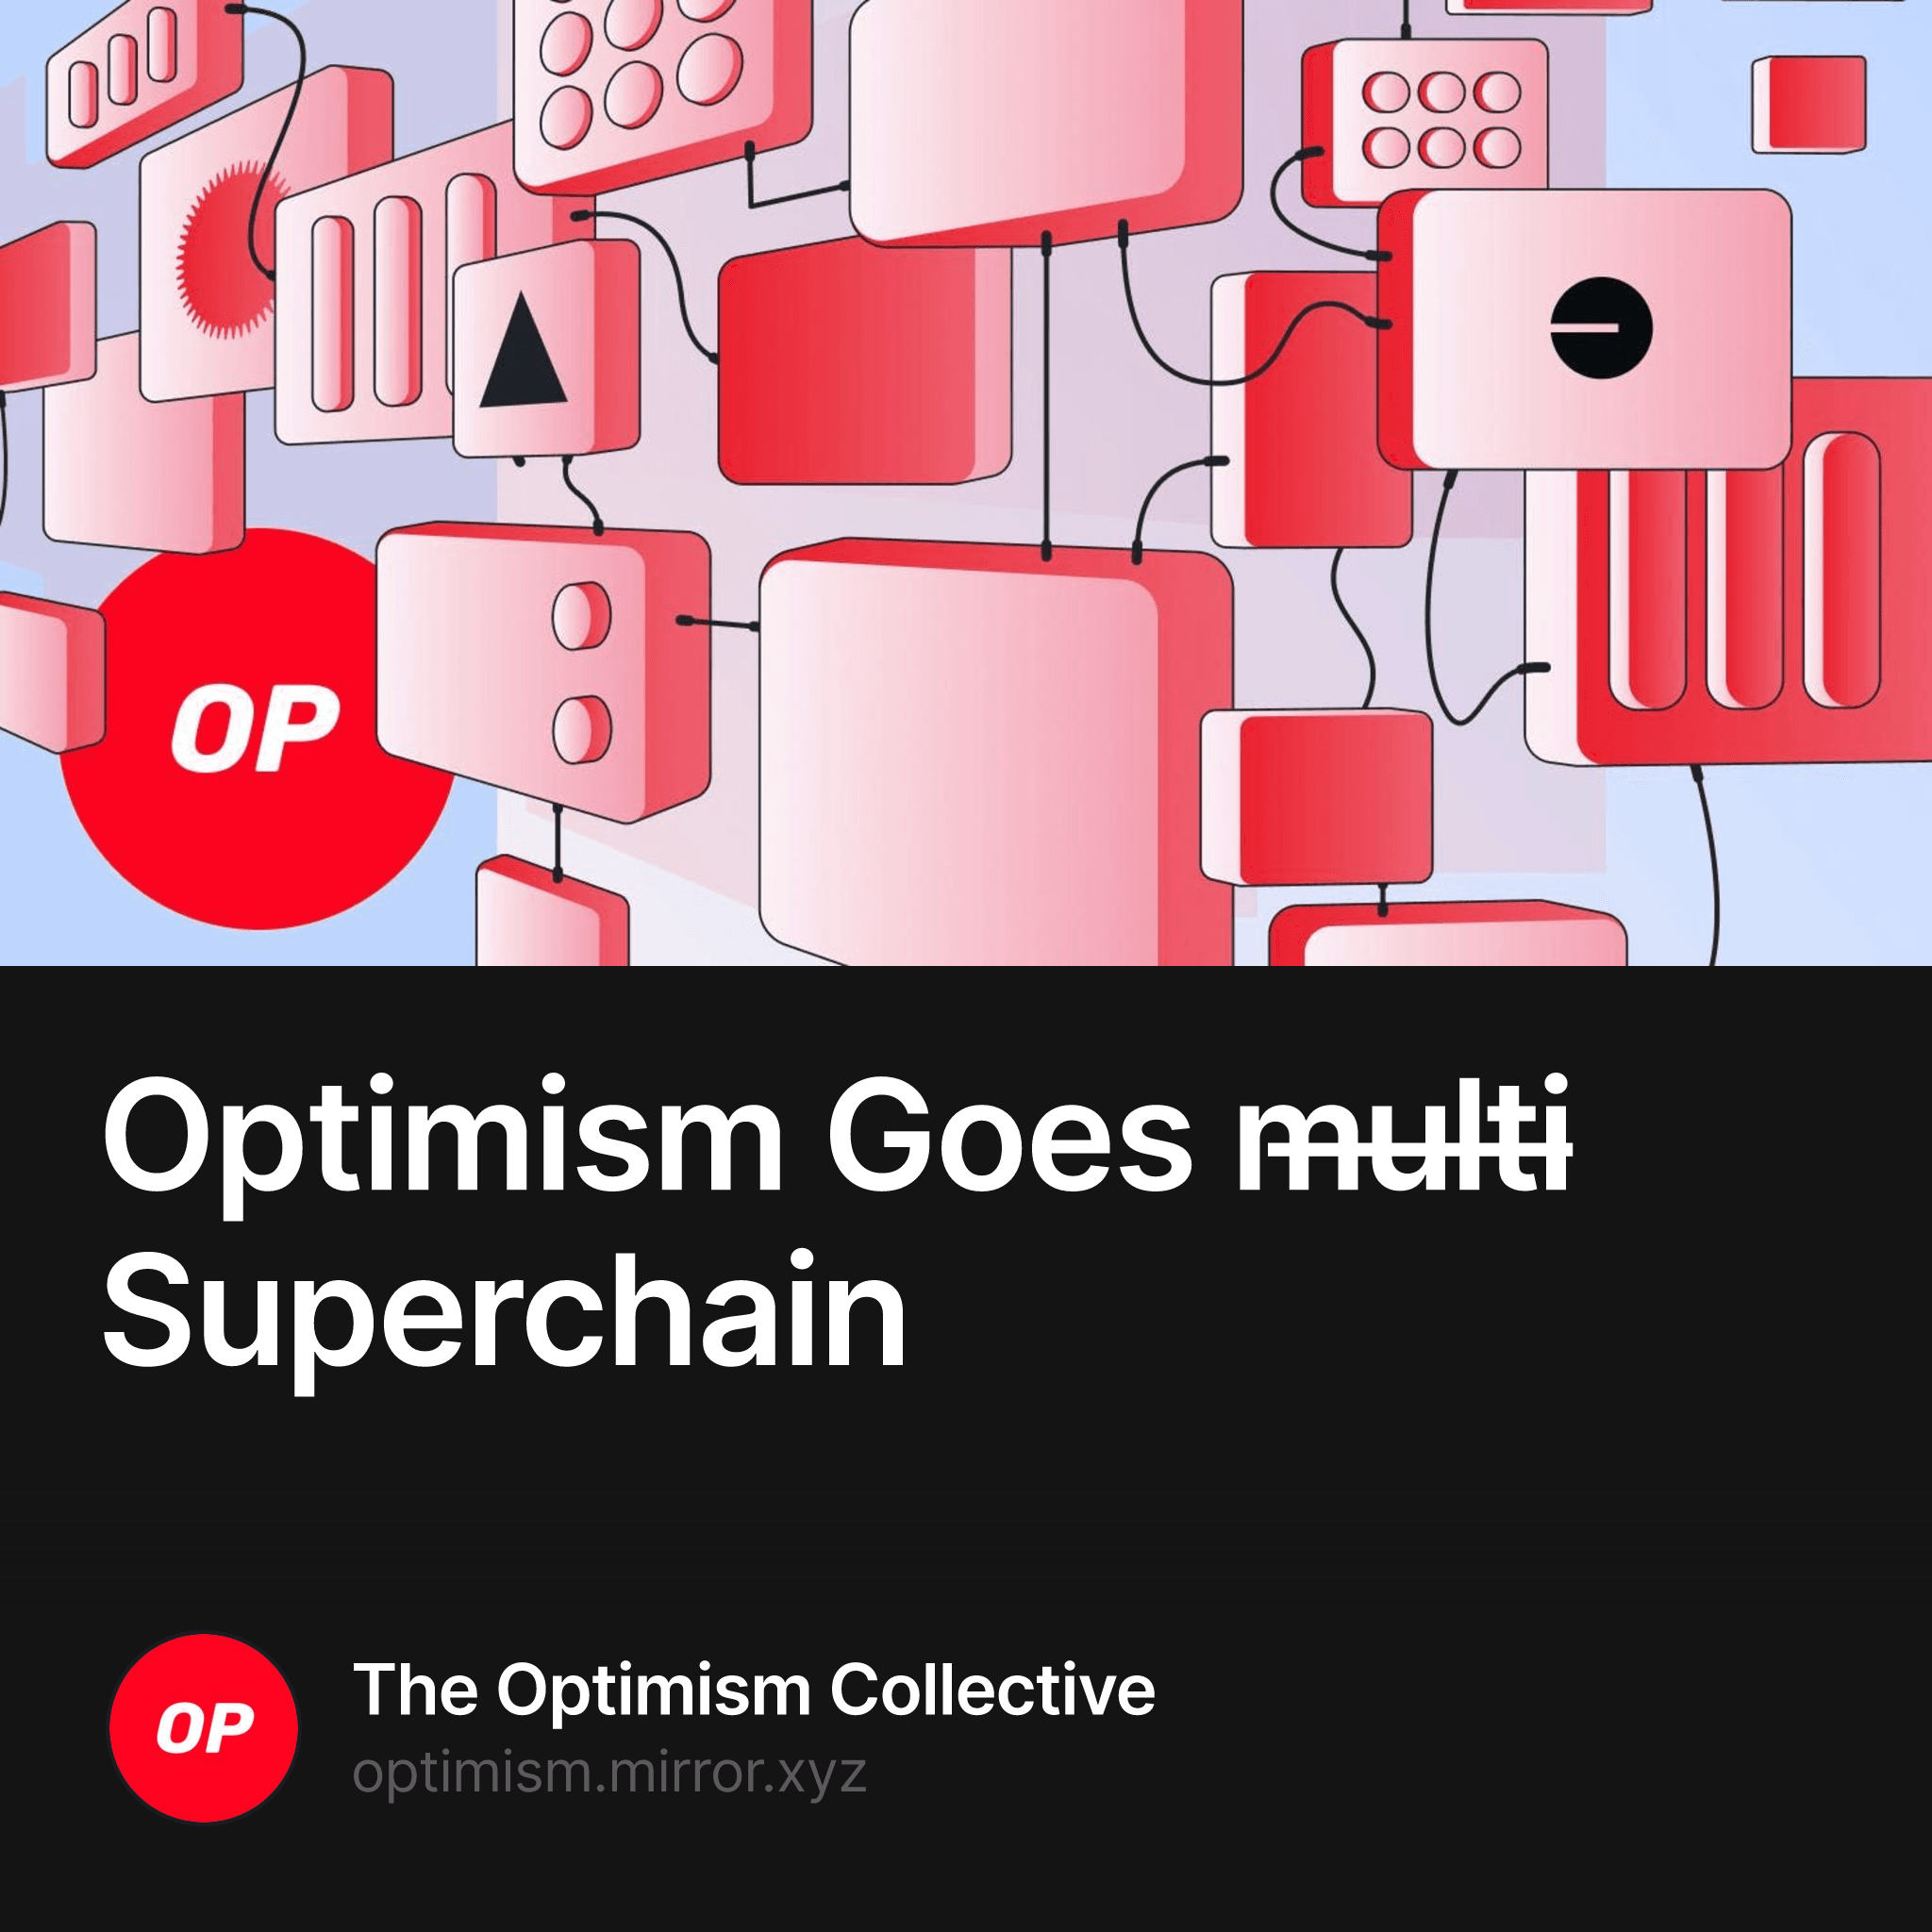 Optimism Goes m̶u̶l̶t̶i̶ Superchain 5553/10000